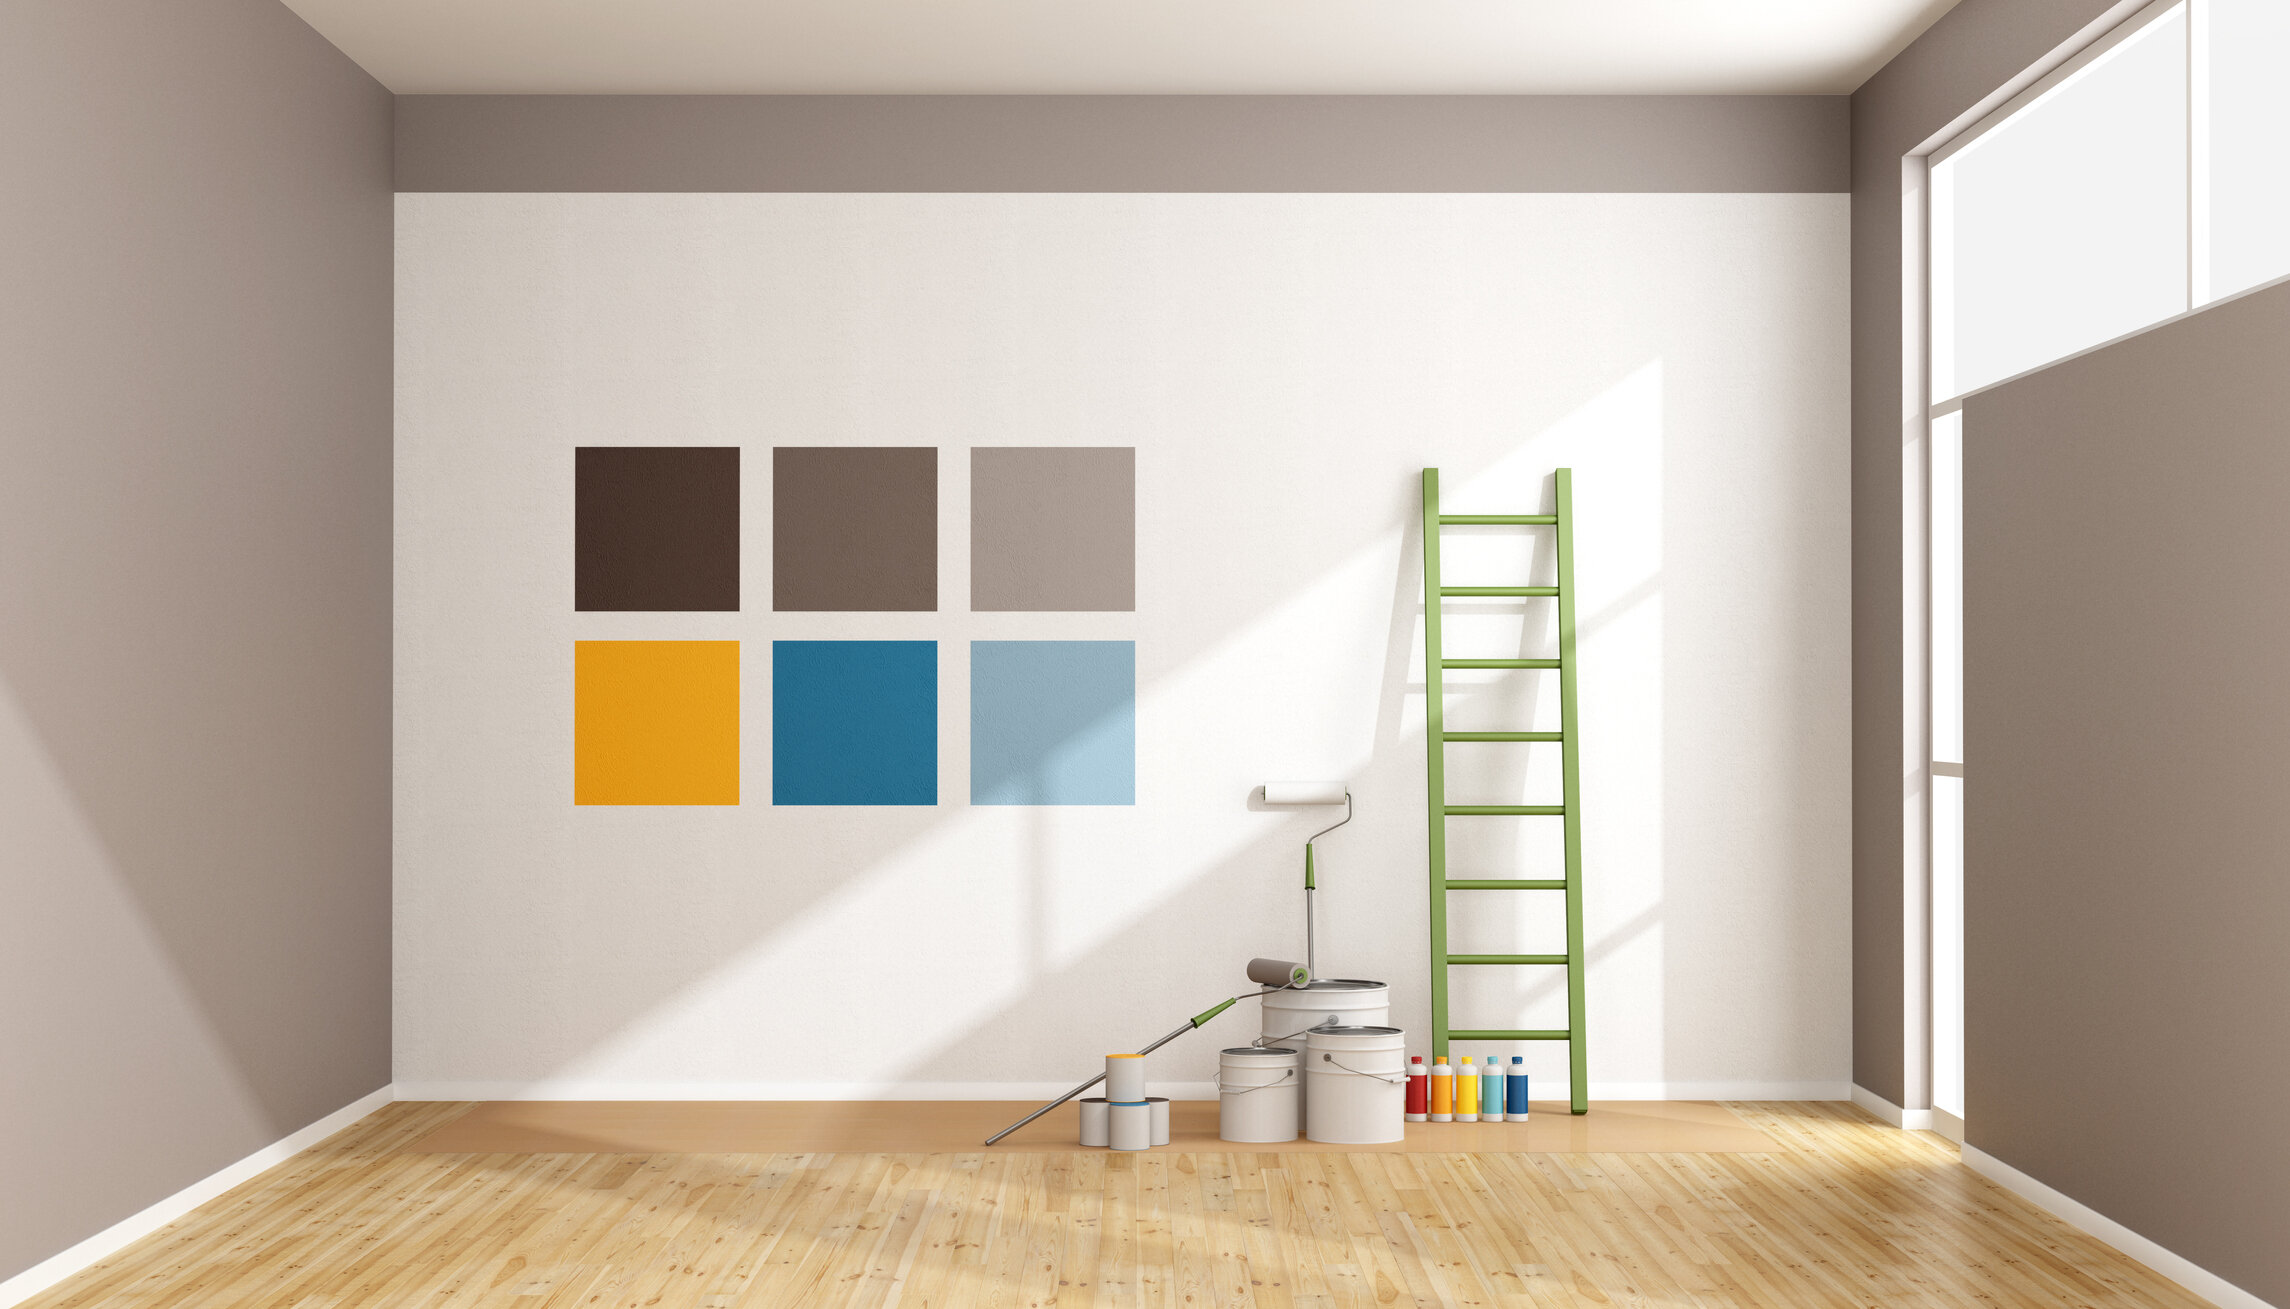 Обои без рекламы. Краска в интерьере. Краска интерьерная. Покраска стен. Покрашенные стены в квартире.